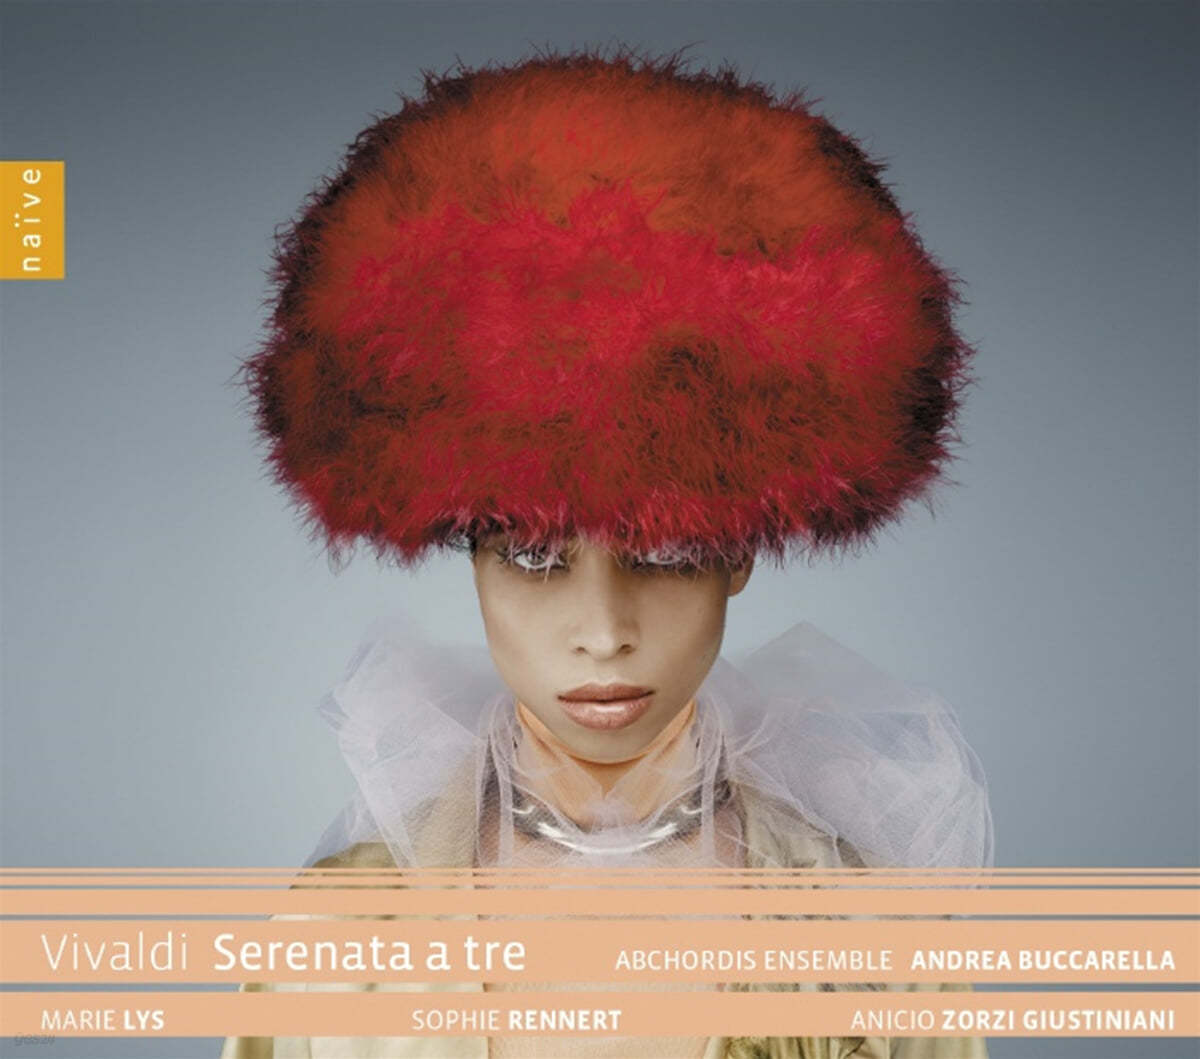 Andrea Buccarella 비발디: 3개의 목소리를 위한 세레나타 (Vivaldi: Serenata A Tre RV.690)